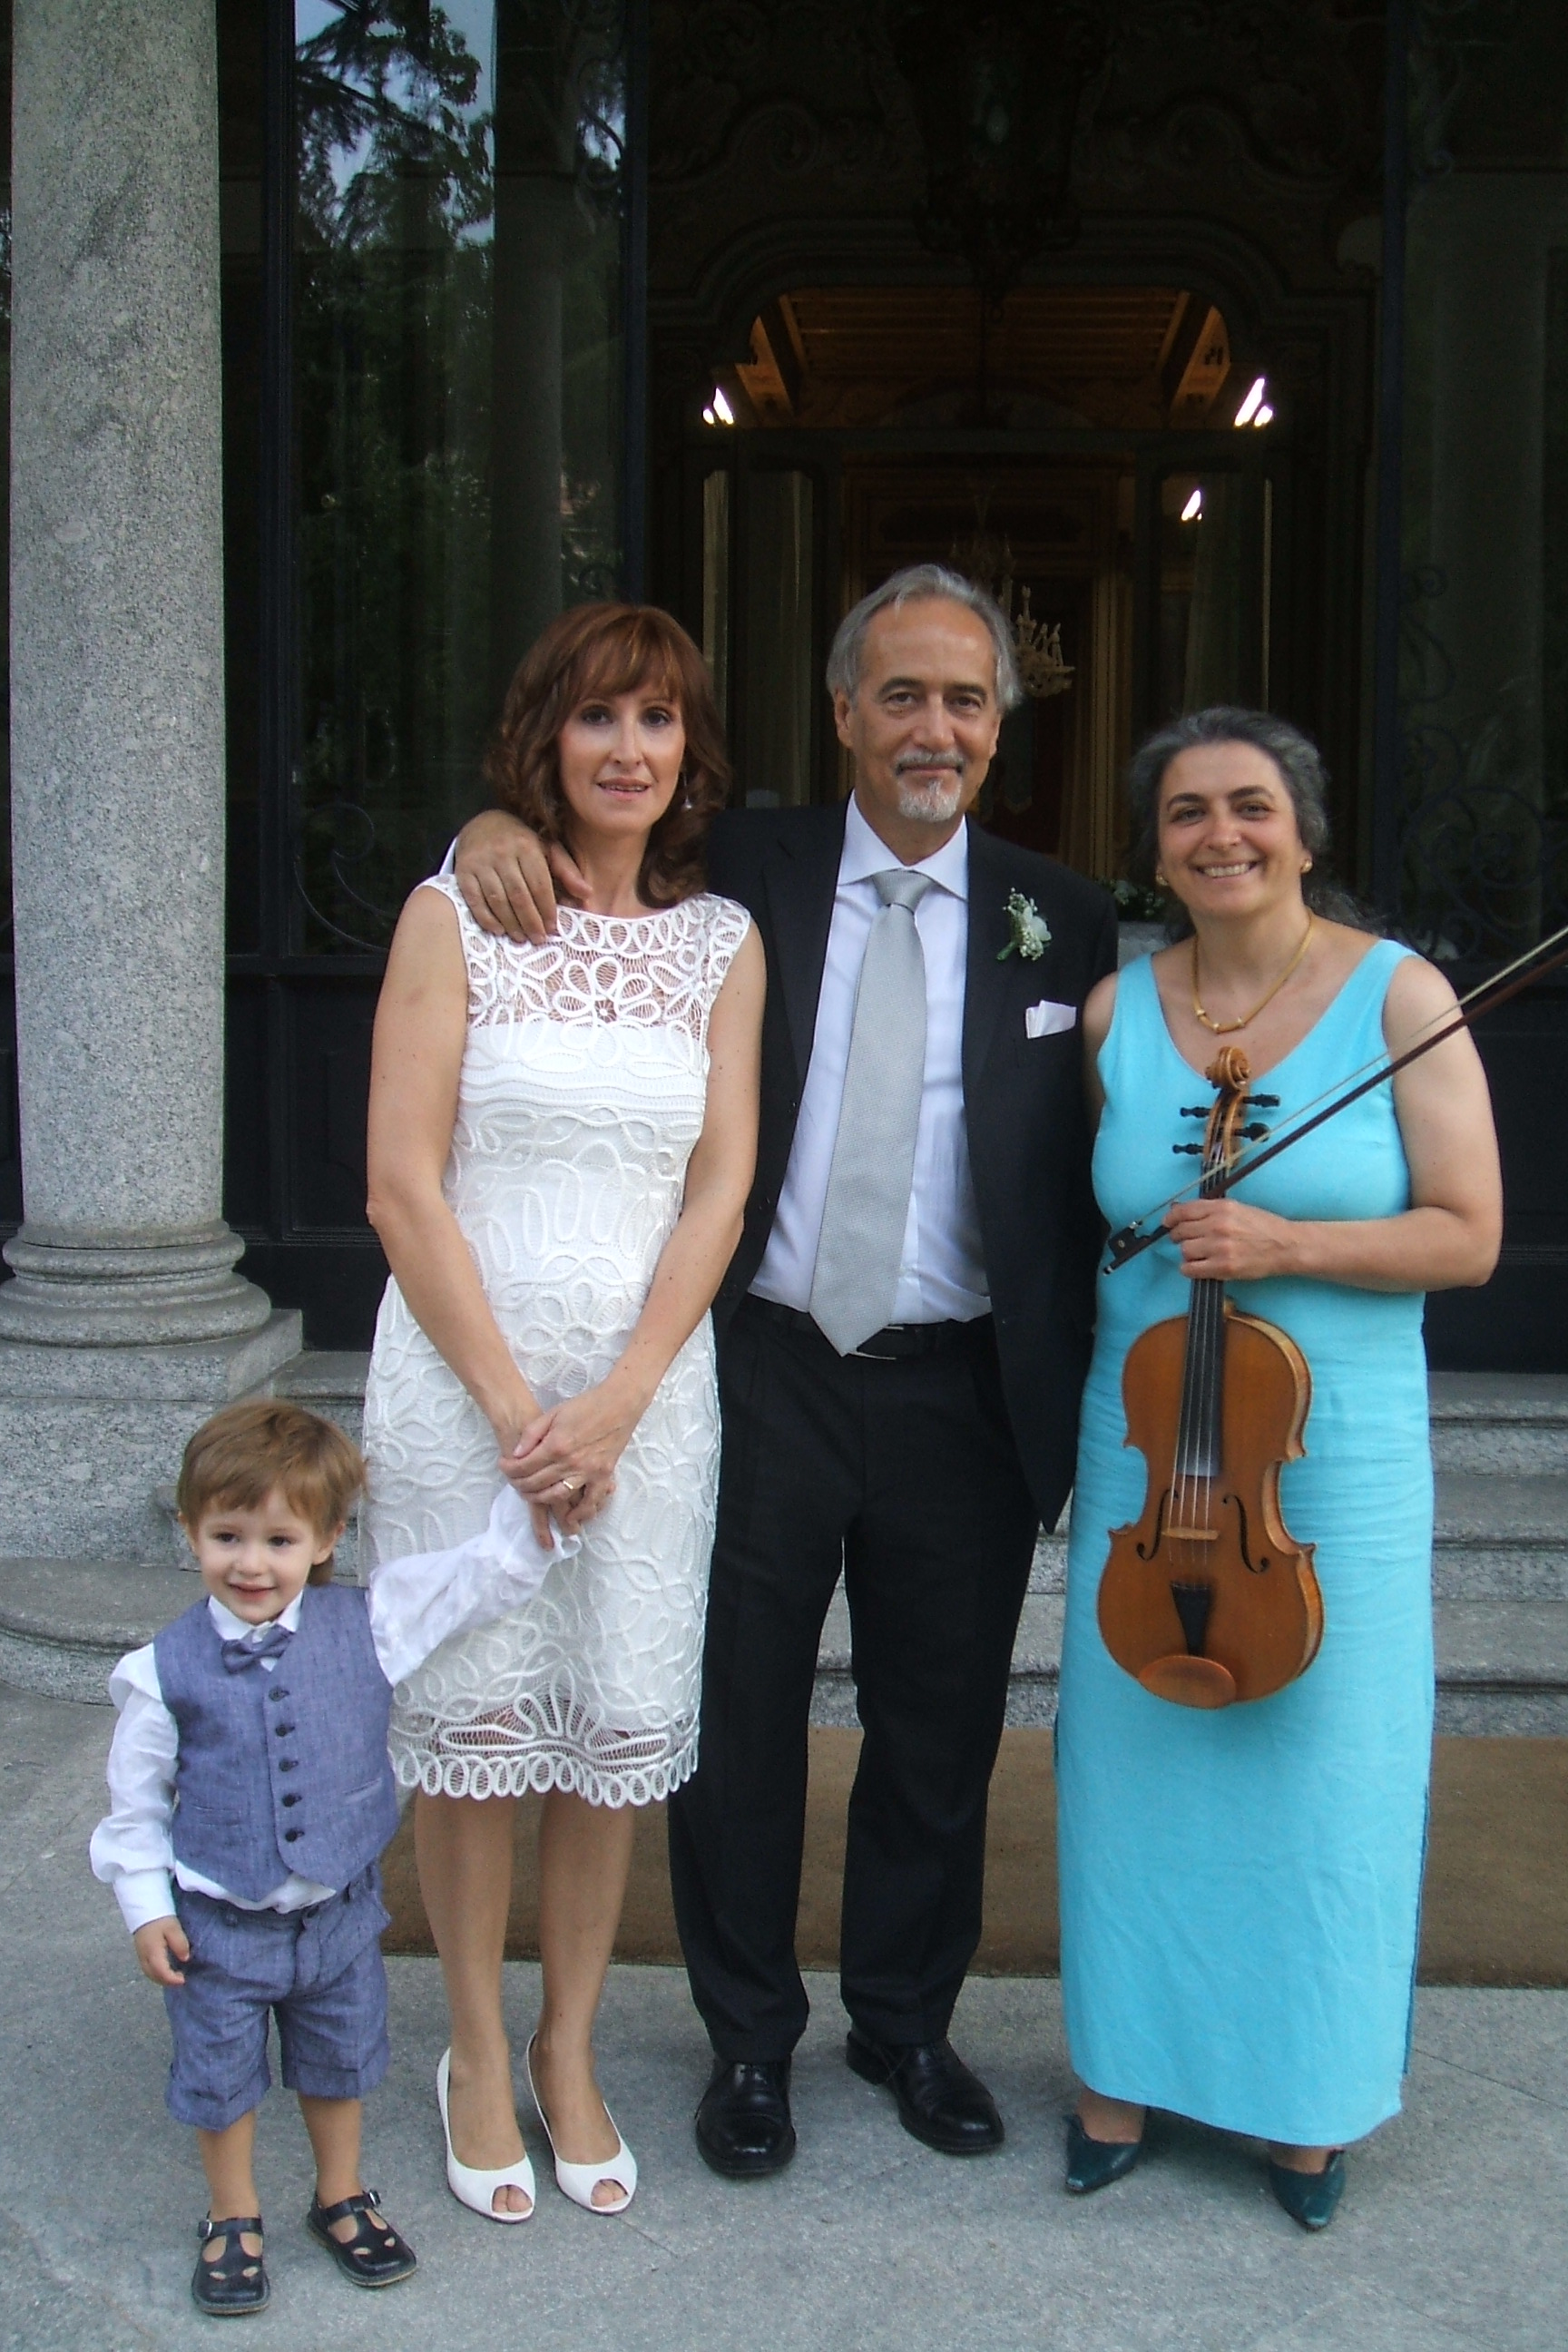 Musica per matrimonio civile: gli sposi con bimbo e musicista, violista, a Villa Confalonieri, Merate